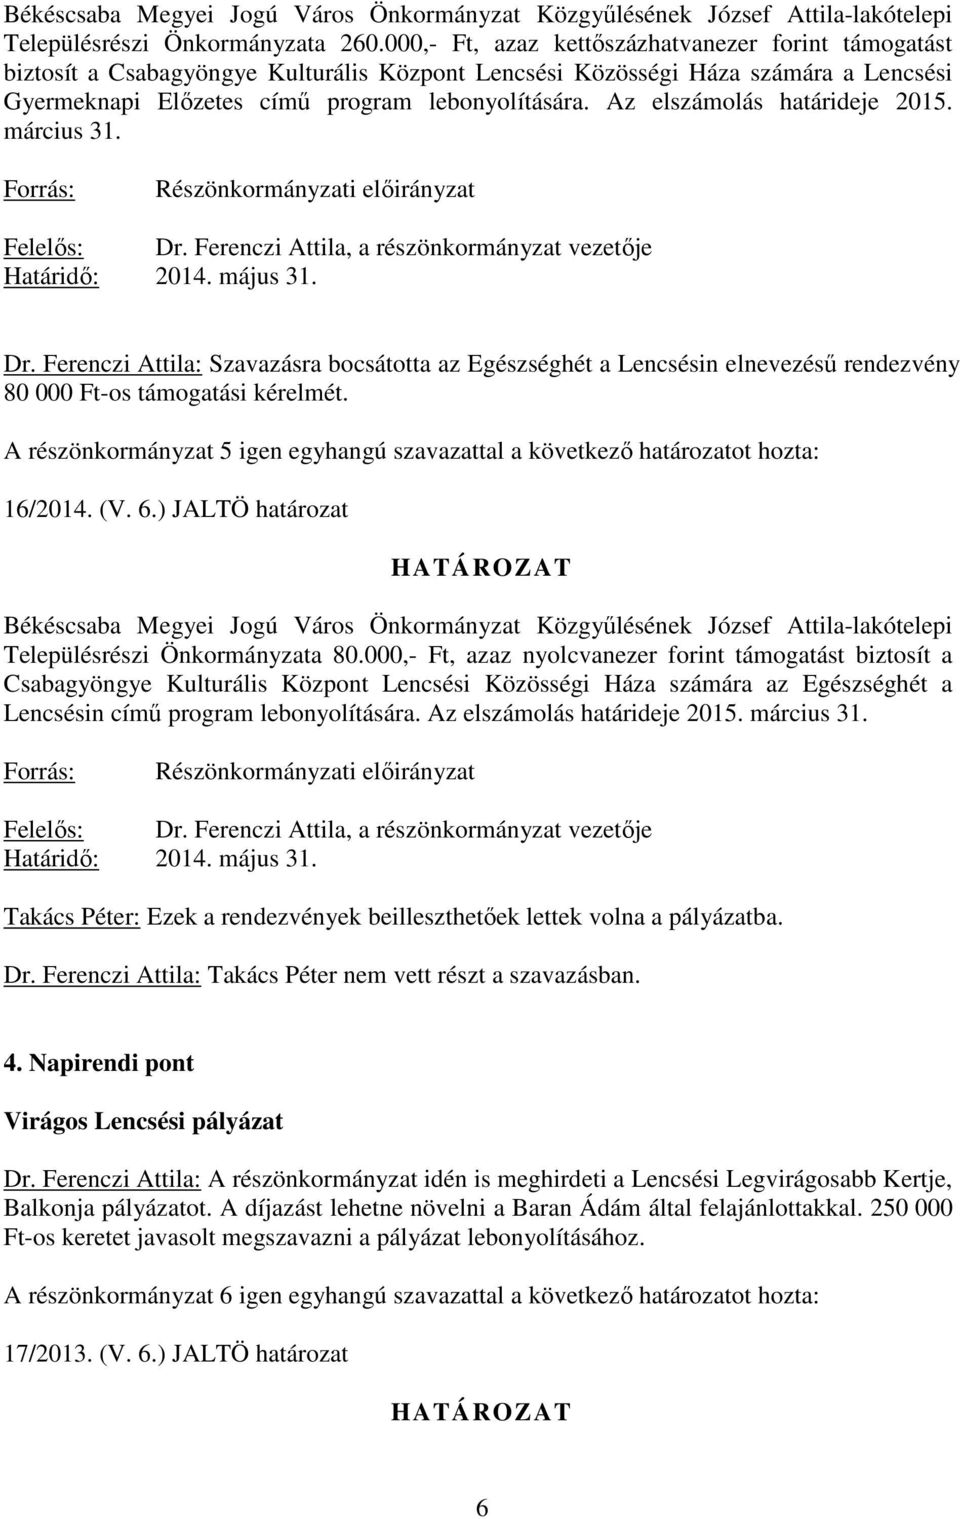 Az elszámolás határideje 2015. március 31. Forrás: Részönkormányzati elıirányzat Határidı: 2014. május 31. Dr.